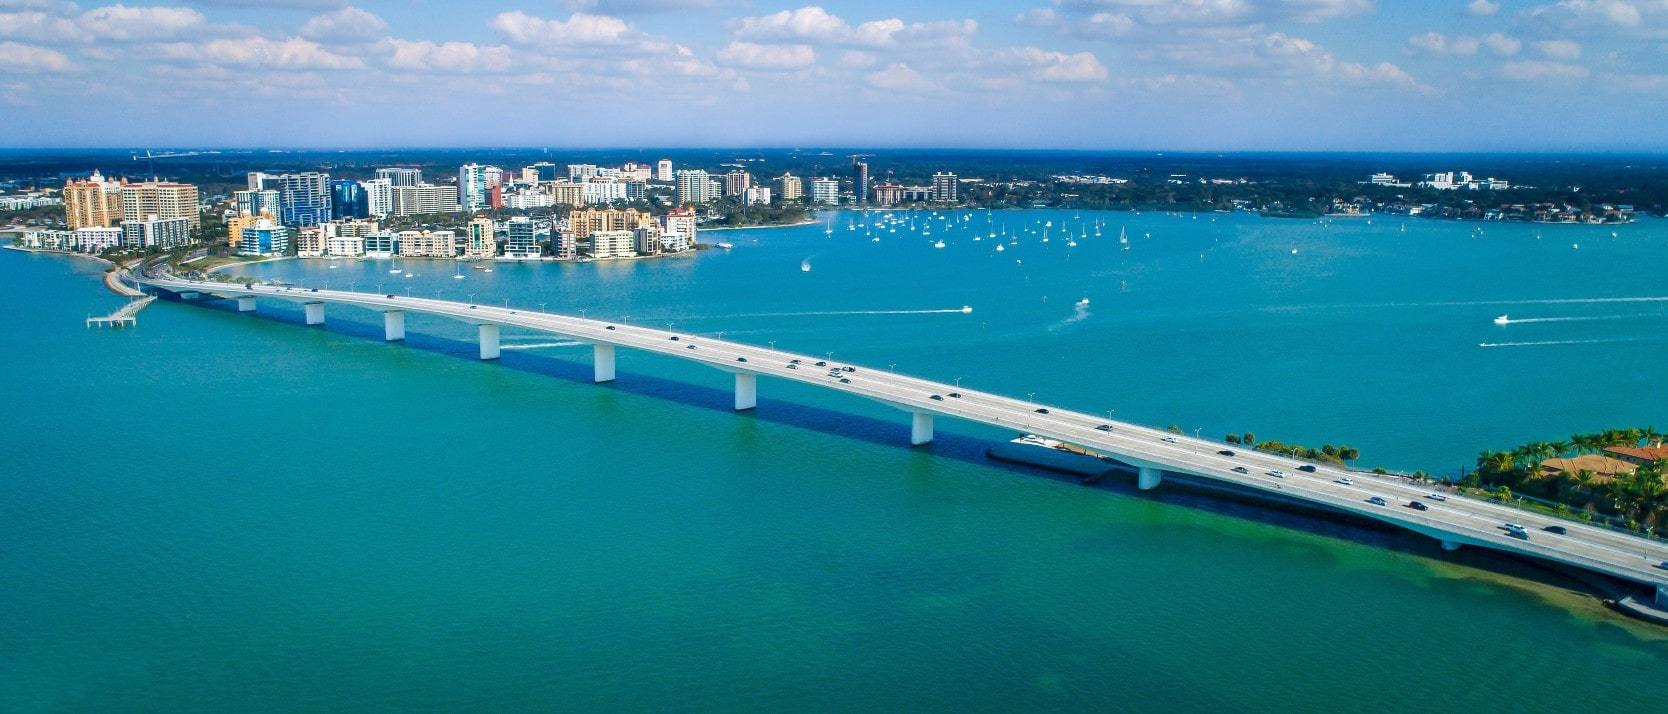 Aerial view of bridge and waterfront real estate in Sarasota, Florida